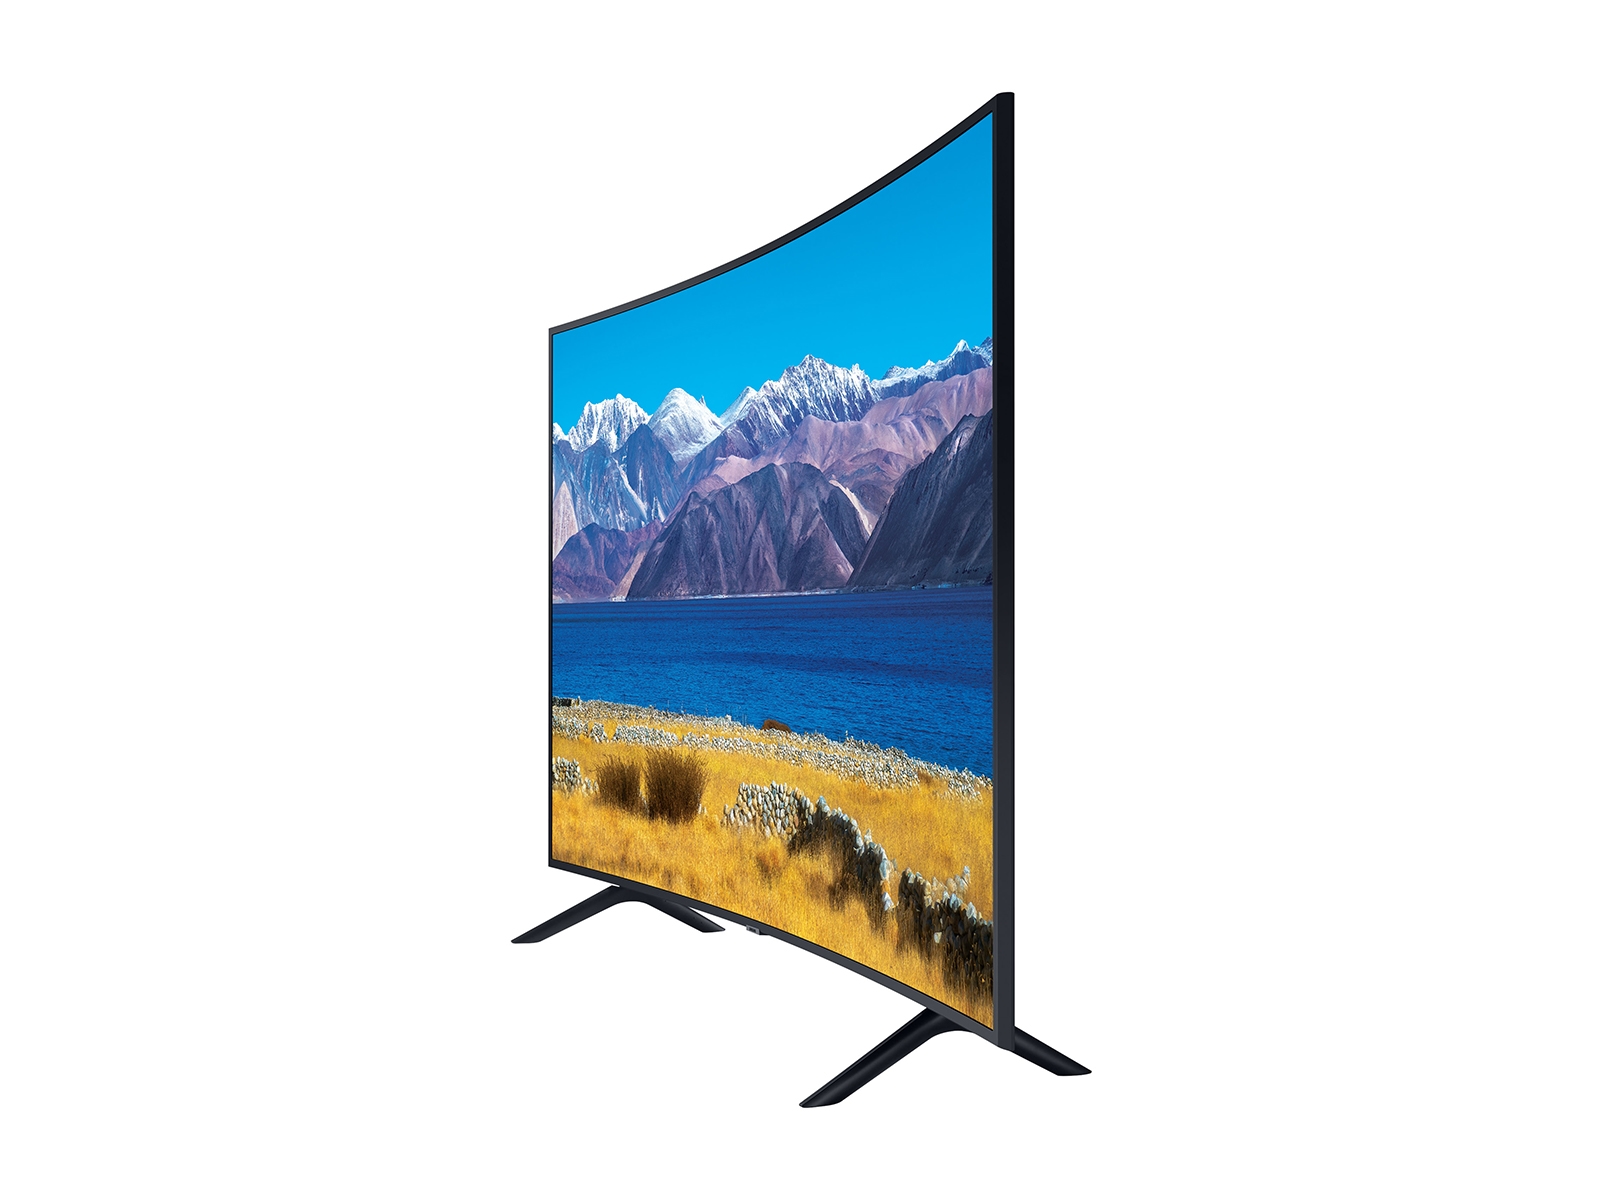 SAMSUNG Serie UHD TU-8300 de 55 pulgadas de clase curvada - 4K UHD HDR  Smart TV con Alexa incorporado (modelo UN55TU8300FXZA, modelo 2020)